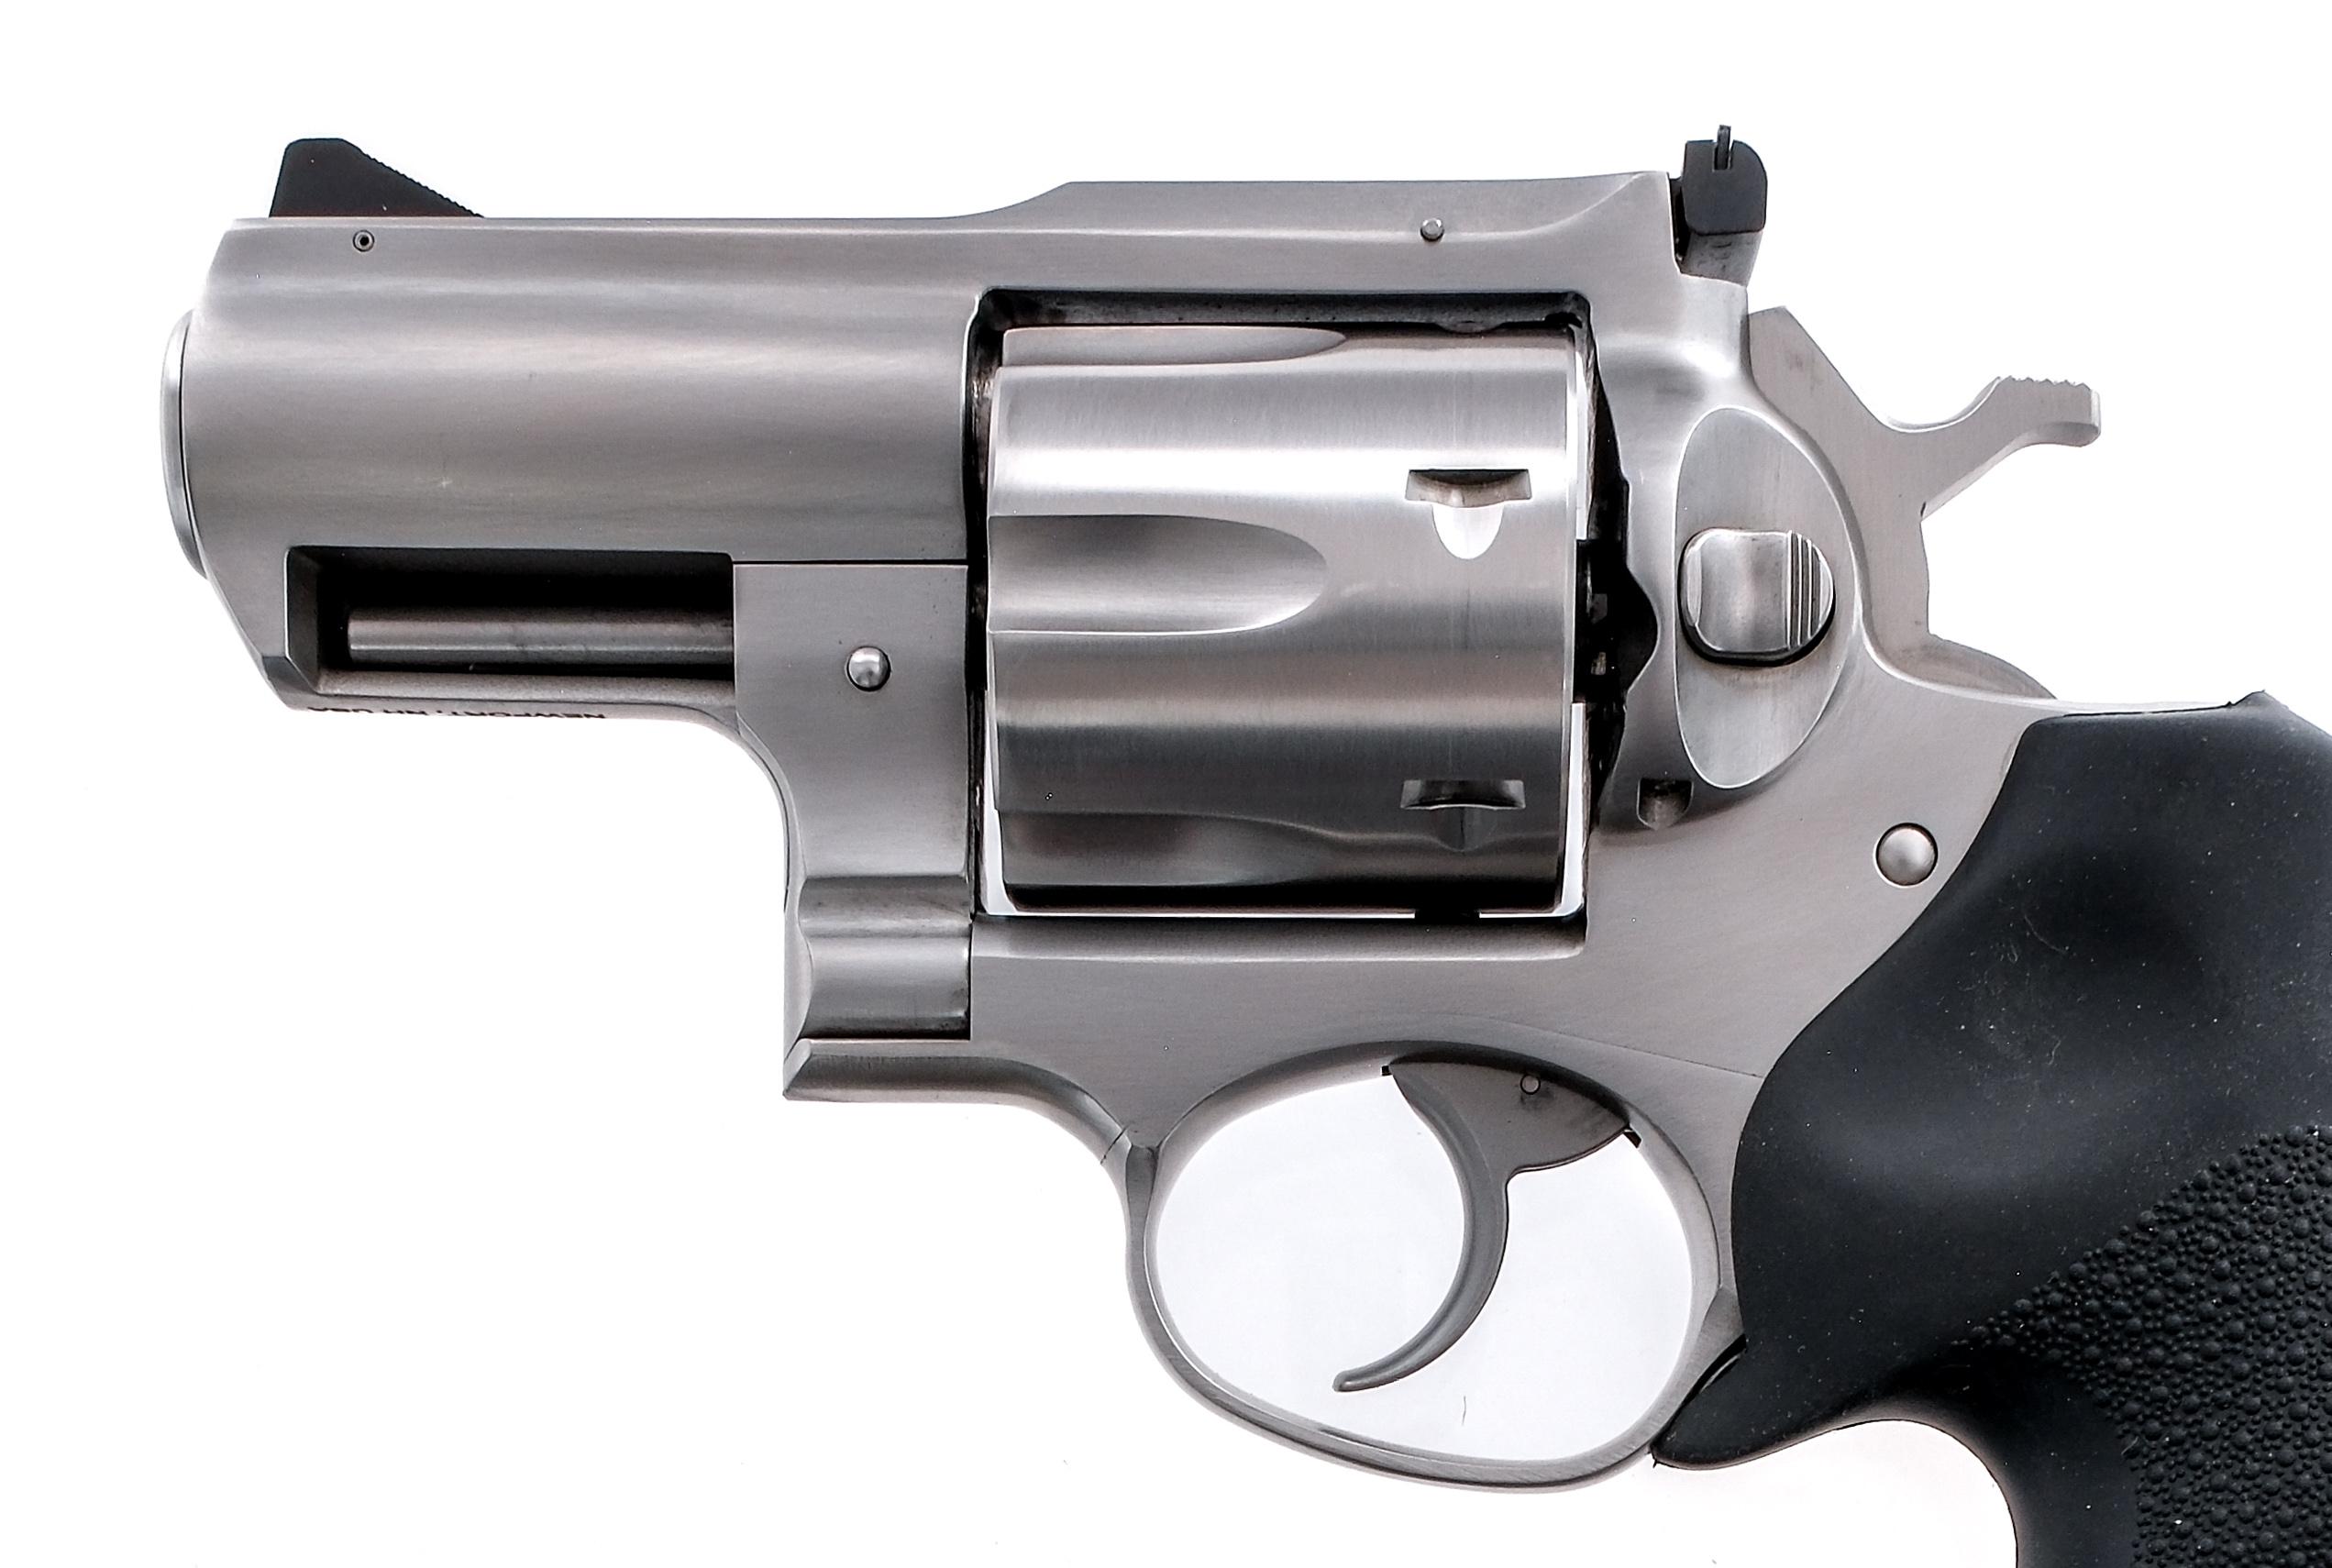 Ruger Super Redhawk Alaskan .44 Mag Revolver